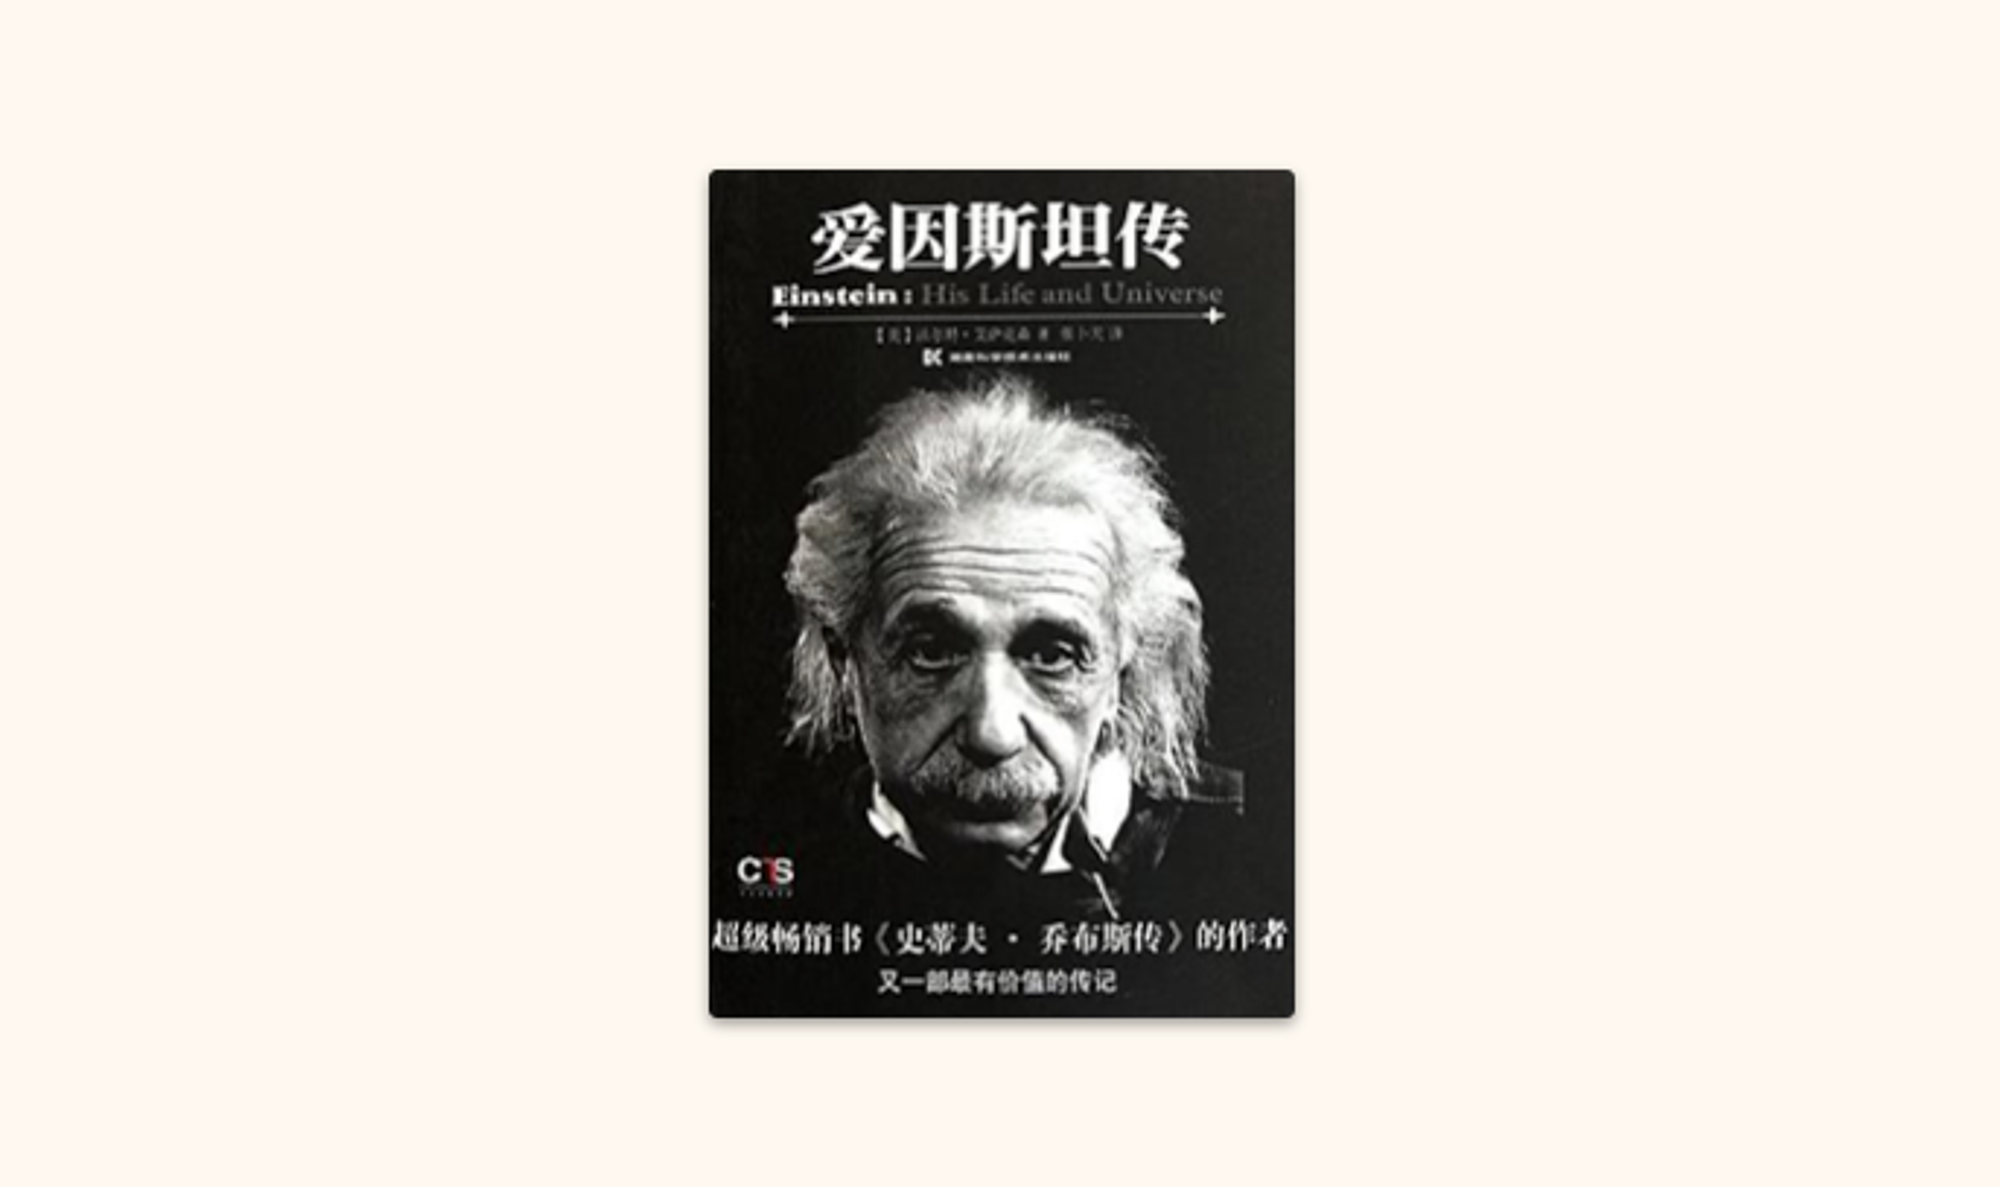 爱因斯坦传 Einstein: His Life and Universe